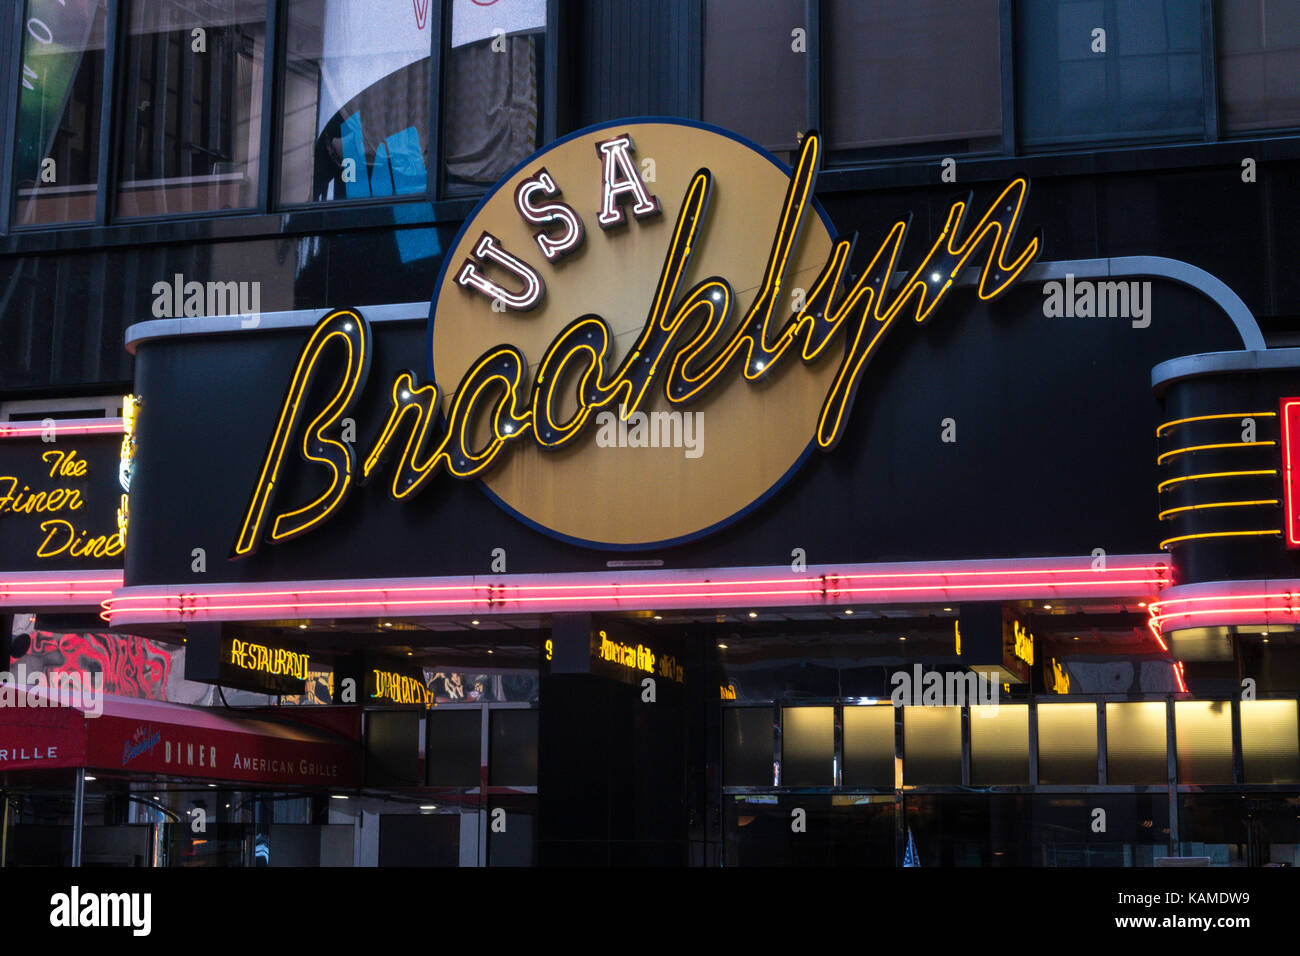 El Brooklyn diner marquesina de neón, Times Square, Nueva York, EE.UU. Foto de stock